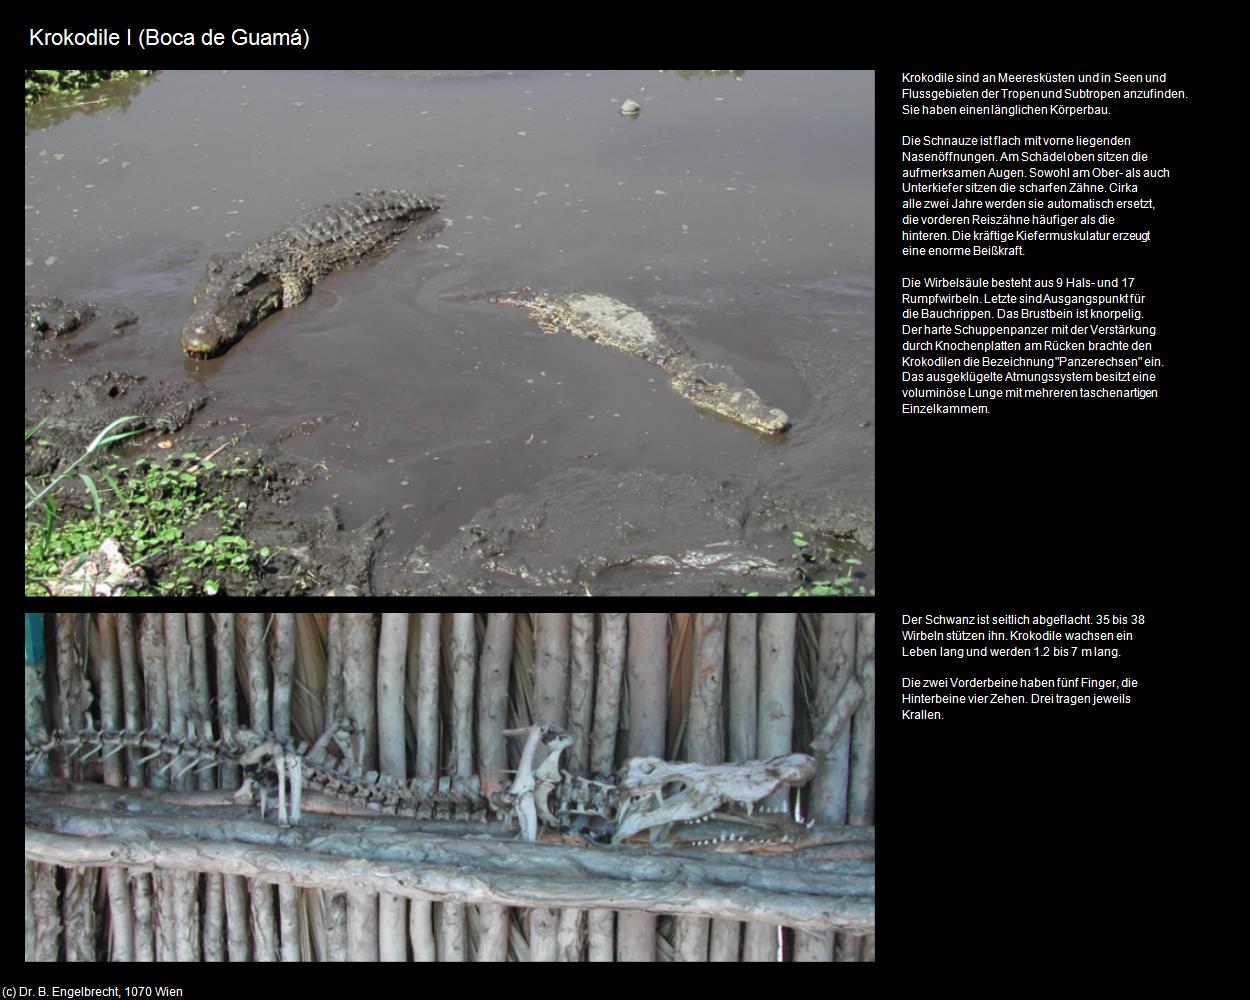 Krokodil I (Boca de Guamá) in KUBA